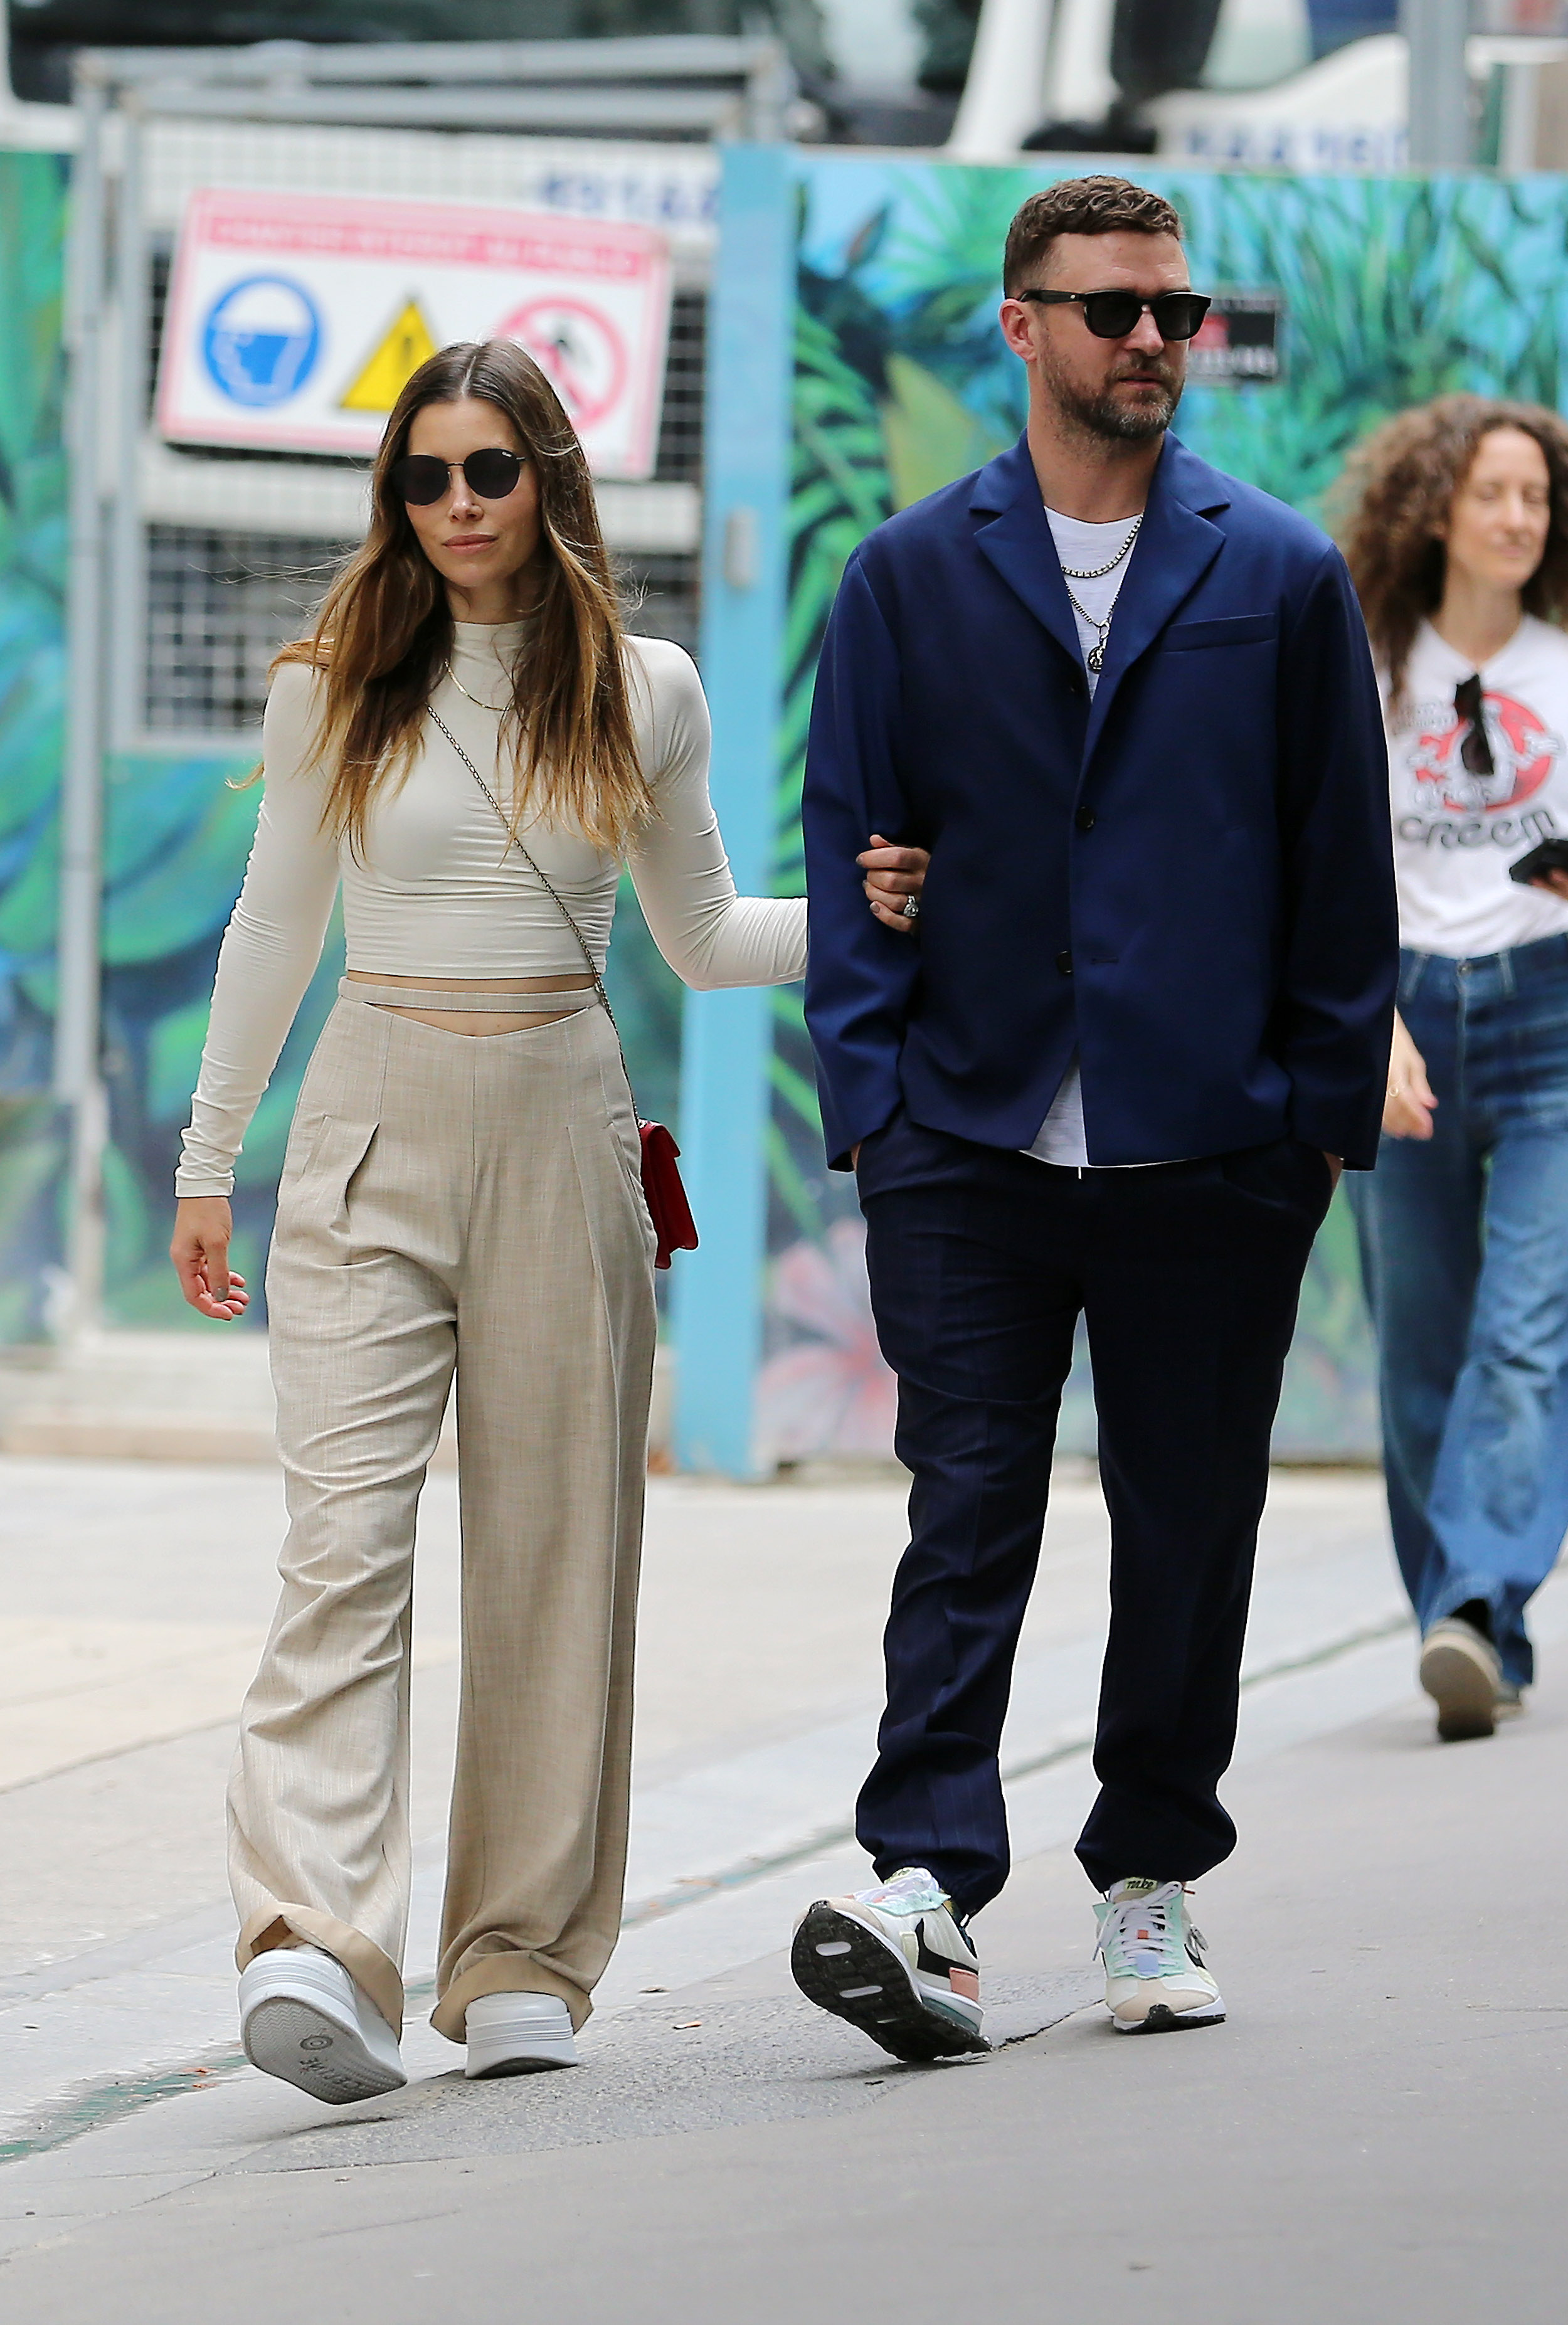 Justin Timberlake y Jessica Biel viajaron a París para asistir a la Semana de la Moda y marcaron tendencia con sus looks. Él vistió un pantalón negro, remera blanca y saco azul, mientras que ella optó por los colores más sobrios: un conjunto de pantalón y polera